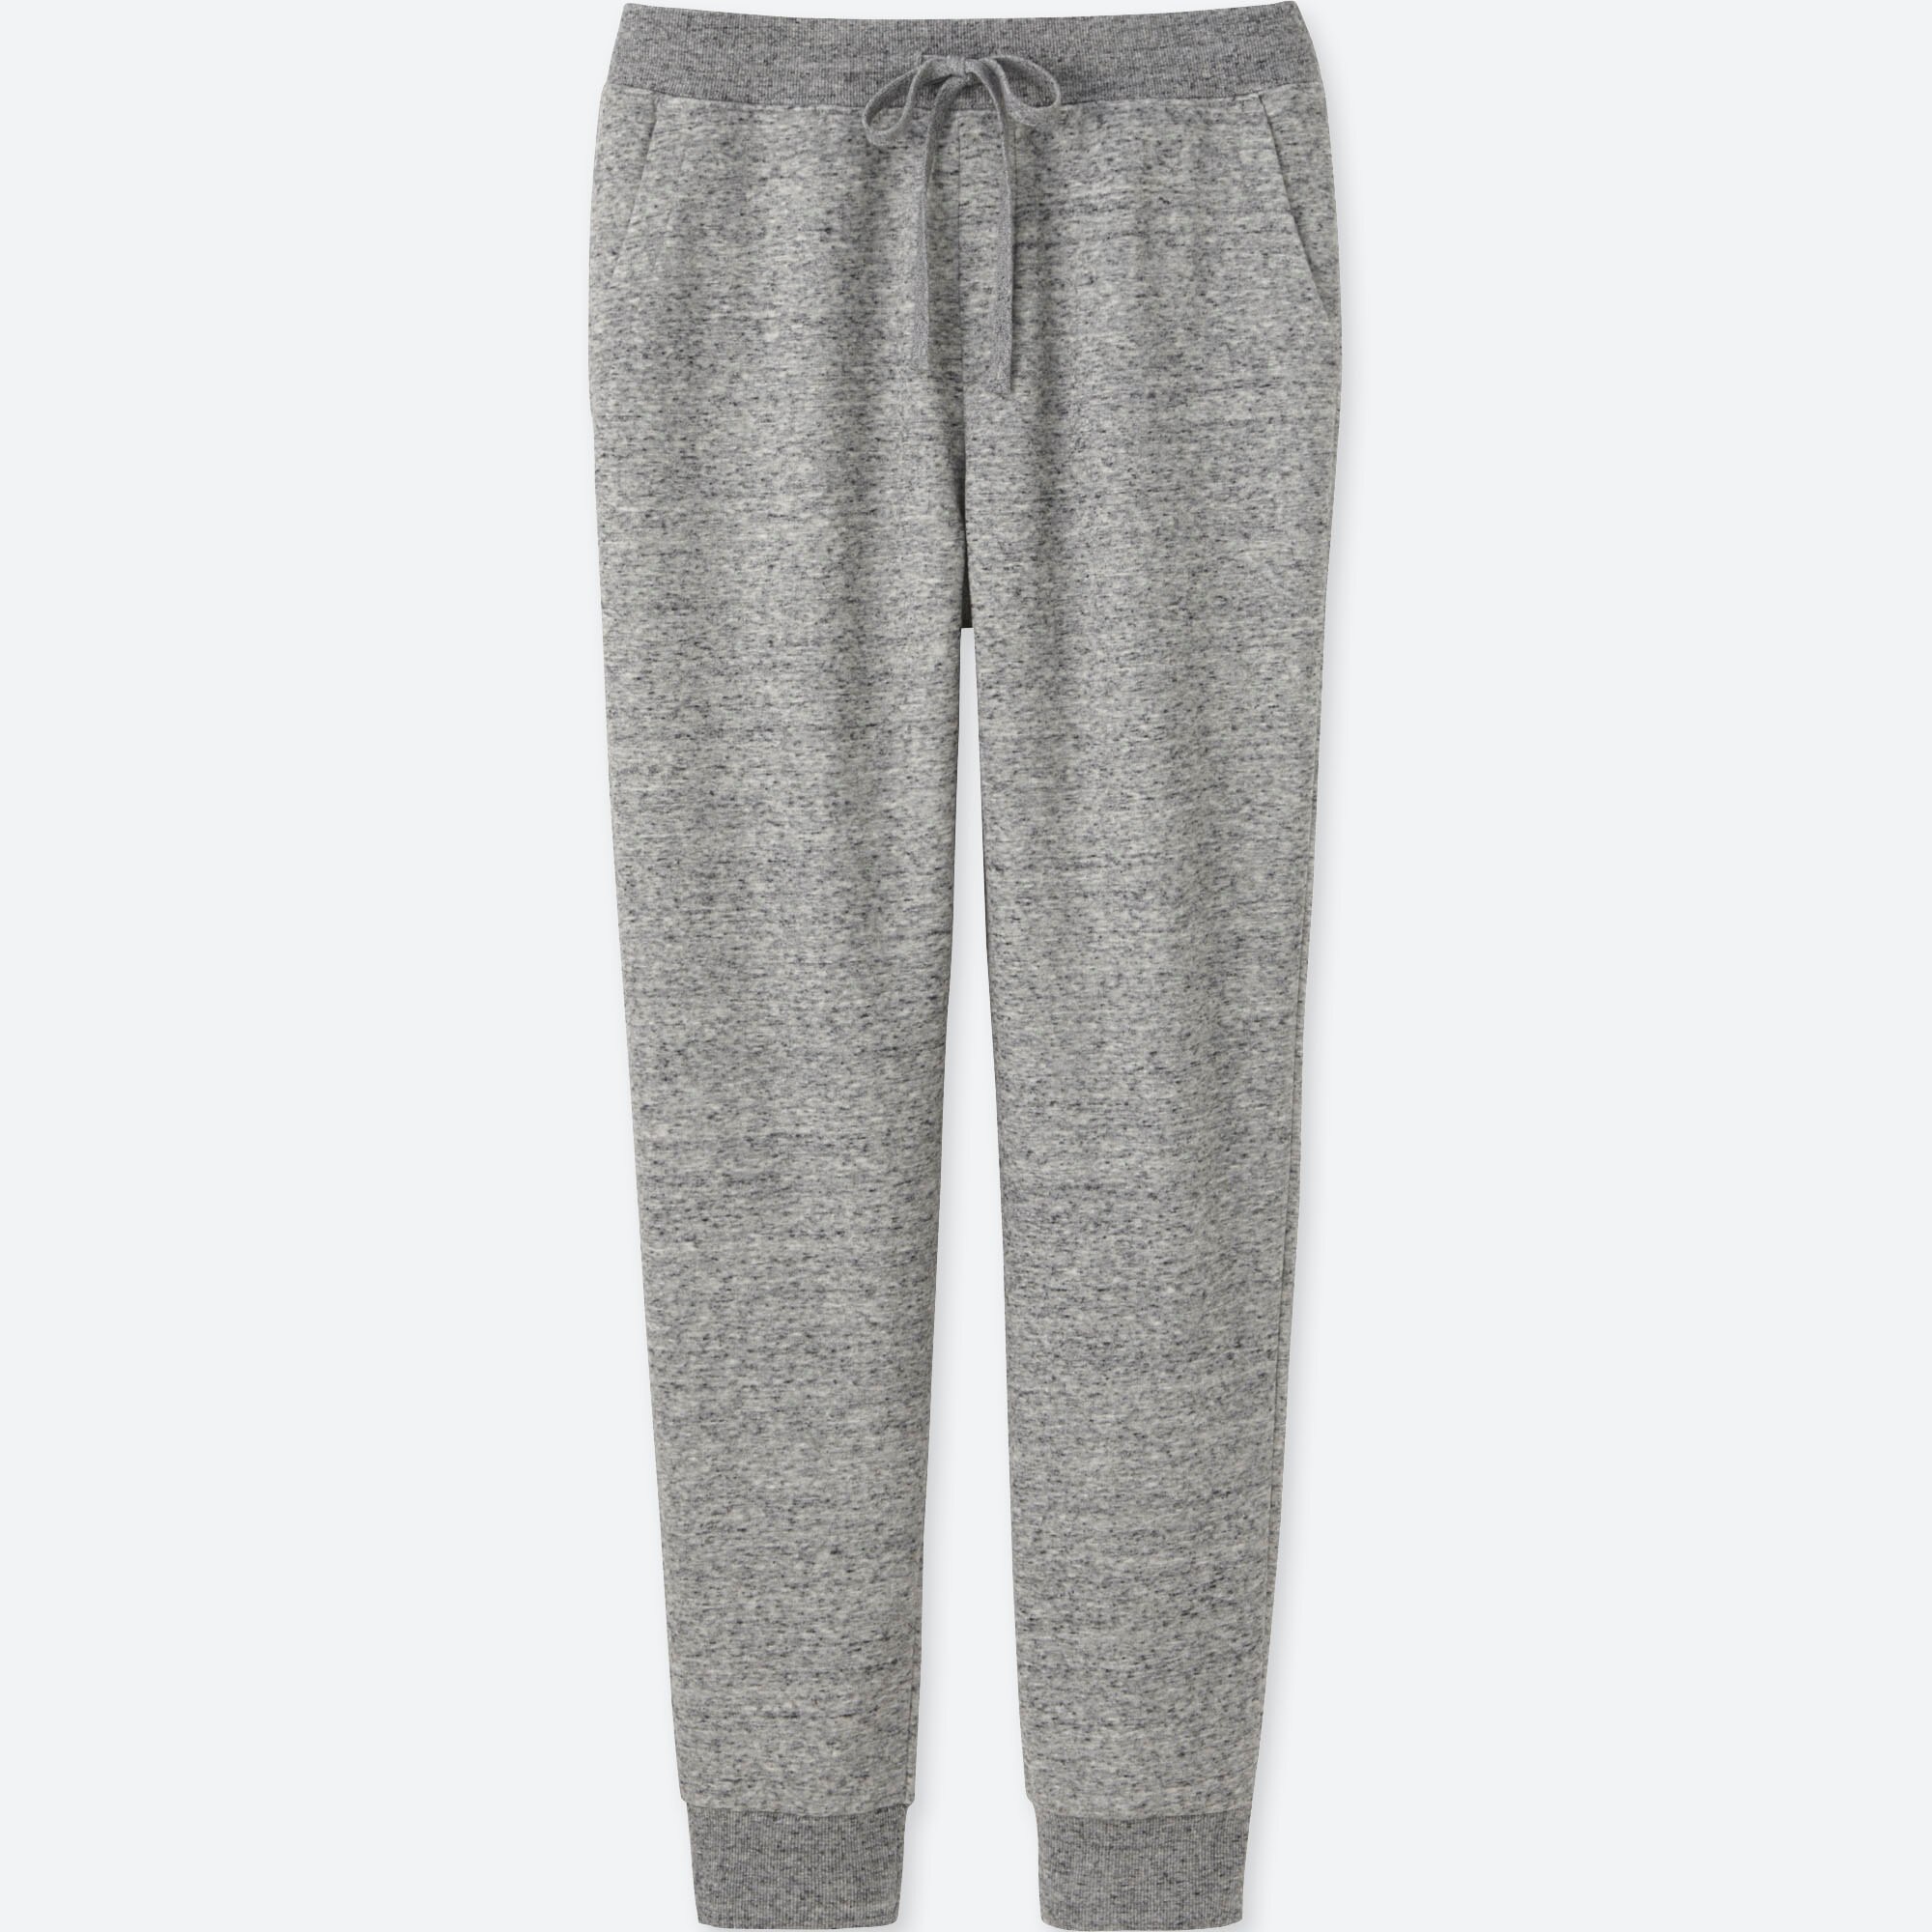 grey fleece sweatpants